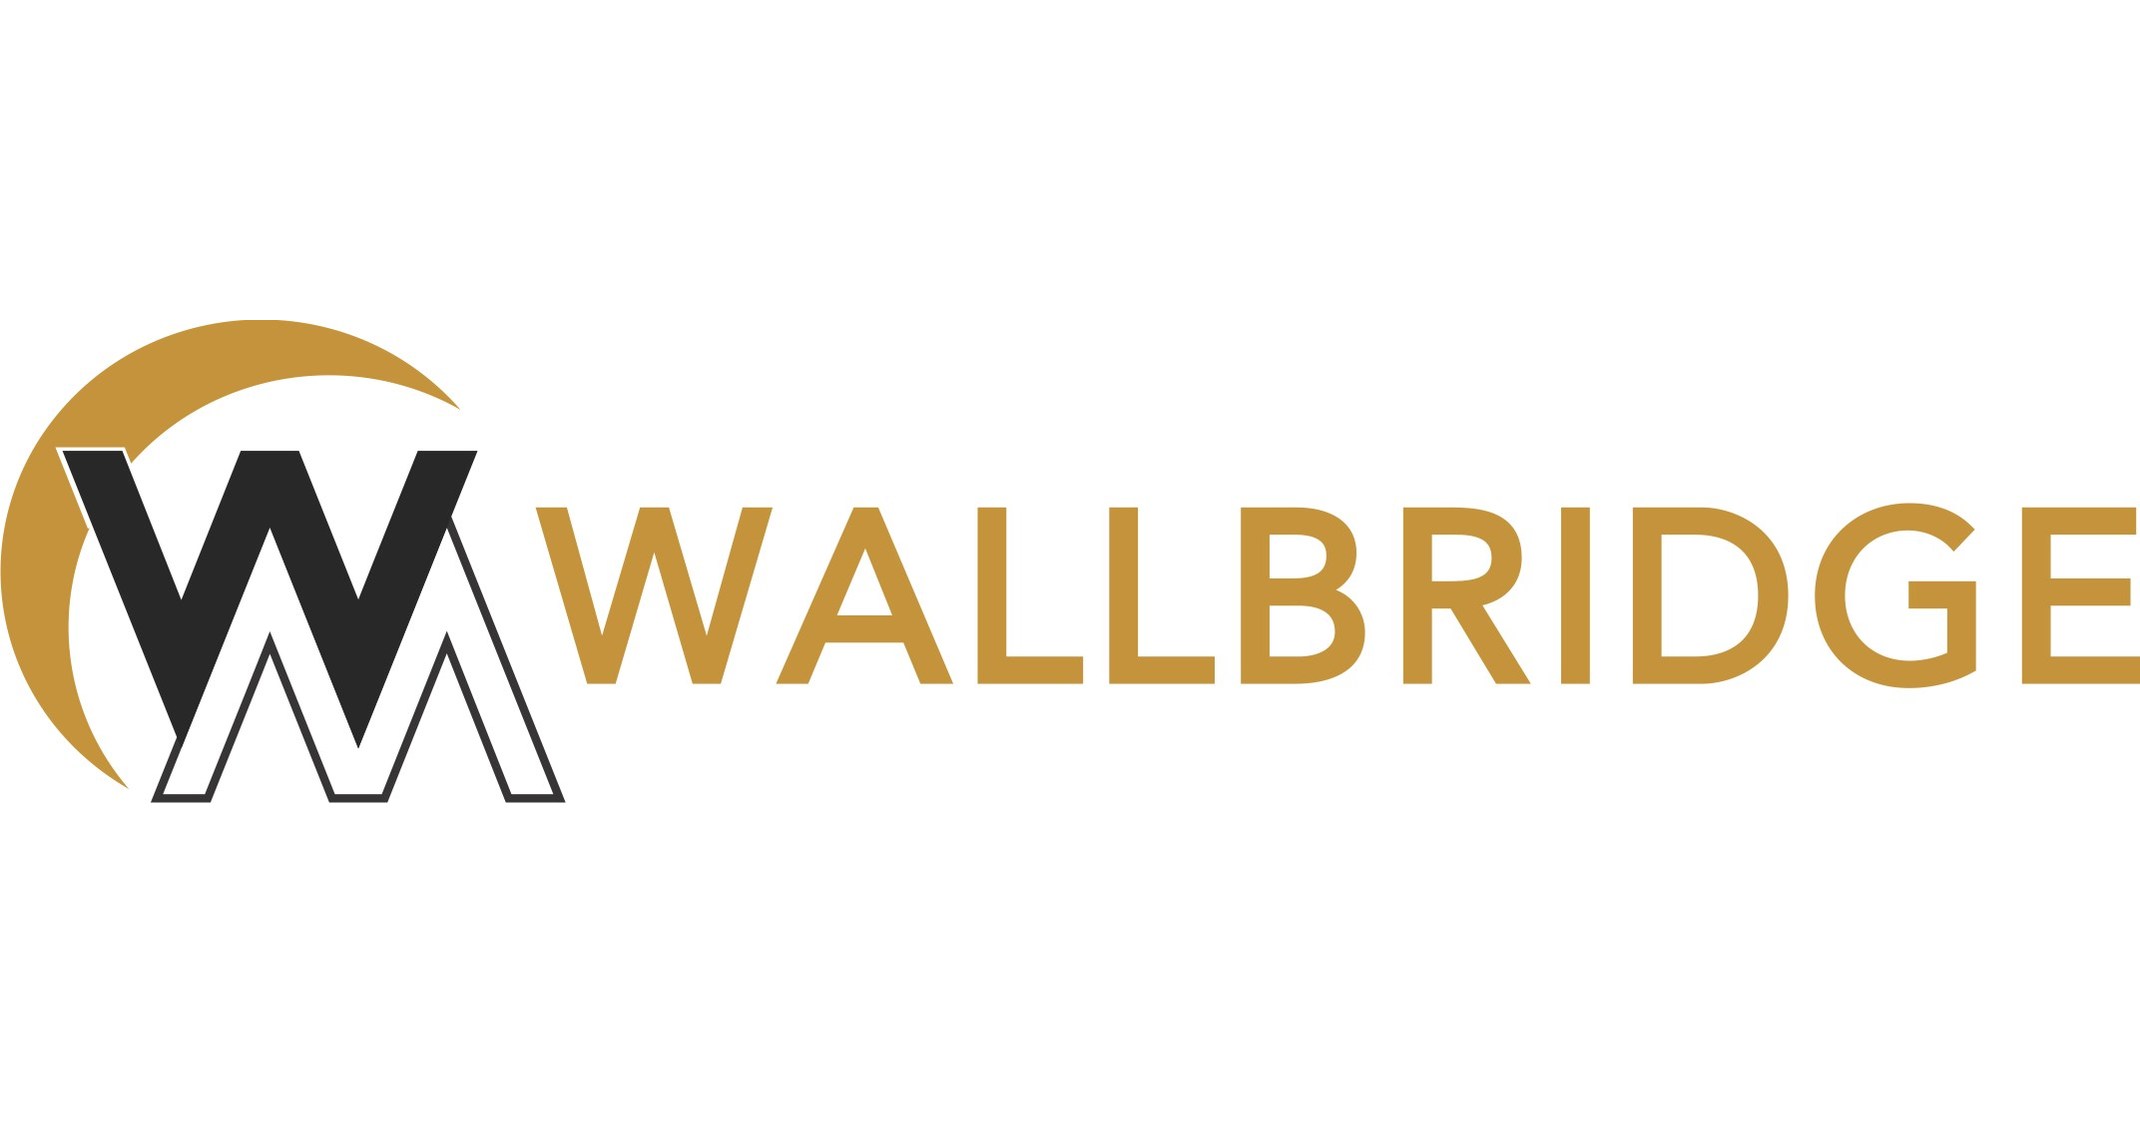 Wallbridge Expands Fenelon Gold System in Multiple